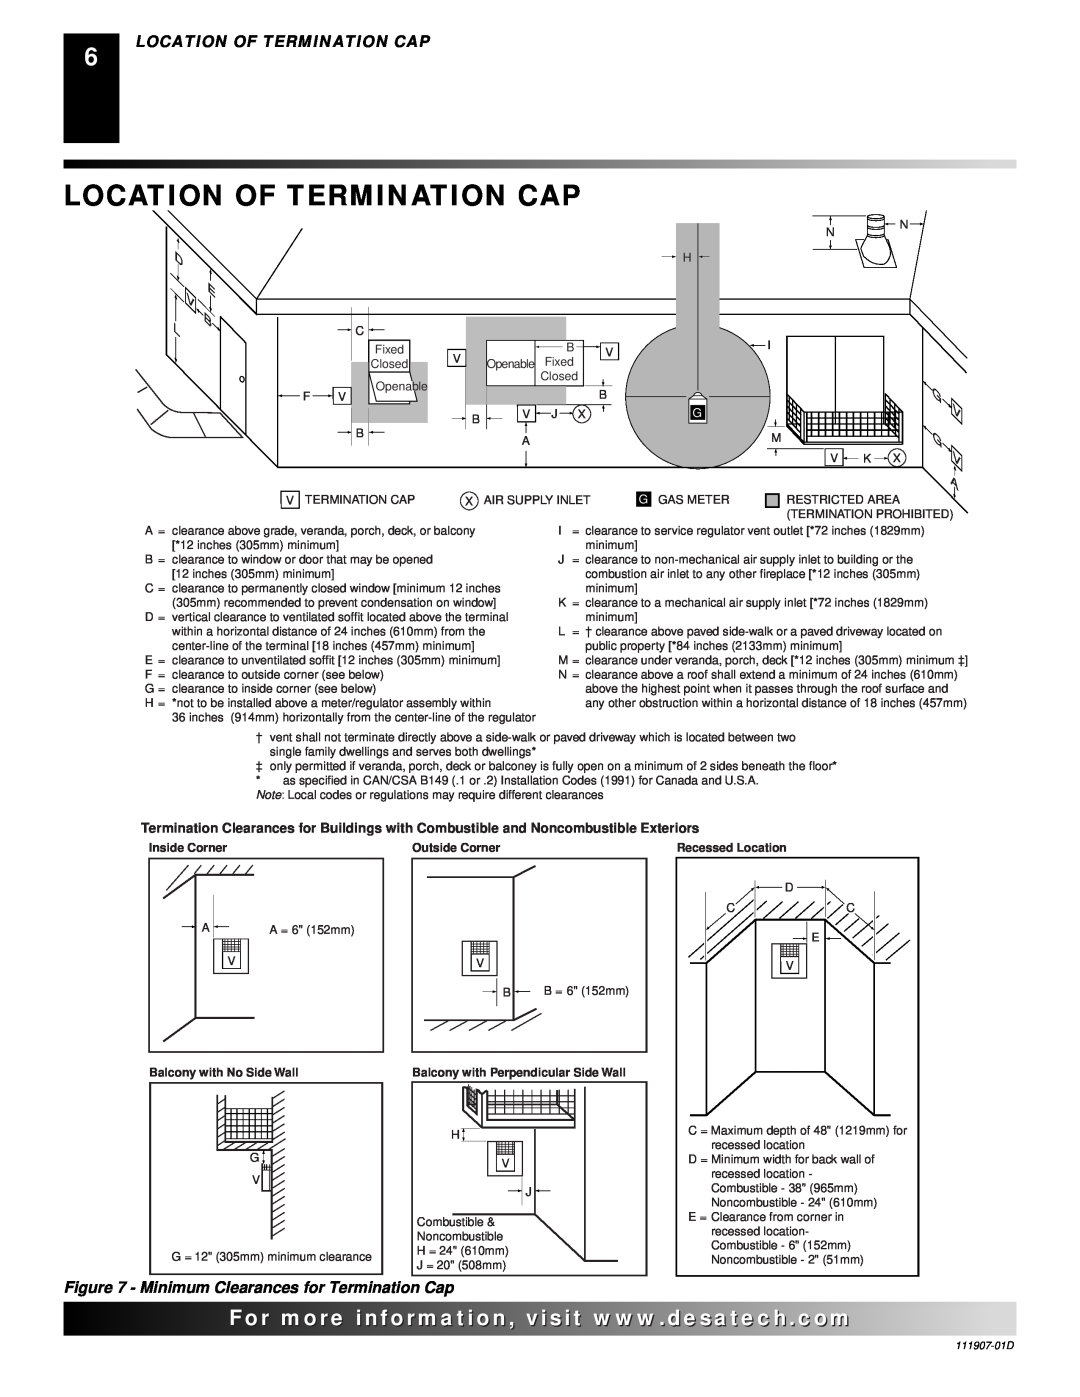 Desa V42EN-A, VV42ENB(1) Location Of Termination Cap, D E B L, V G V A, For..com, Minimum Clearances for Termination Cap 